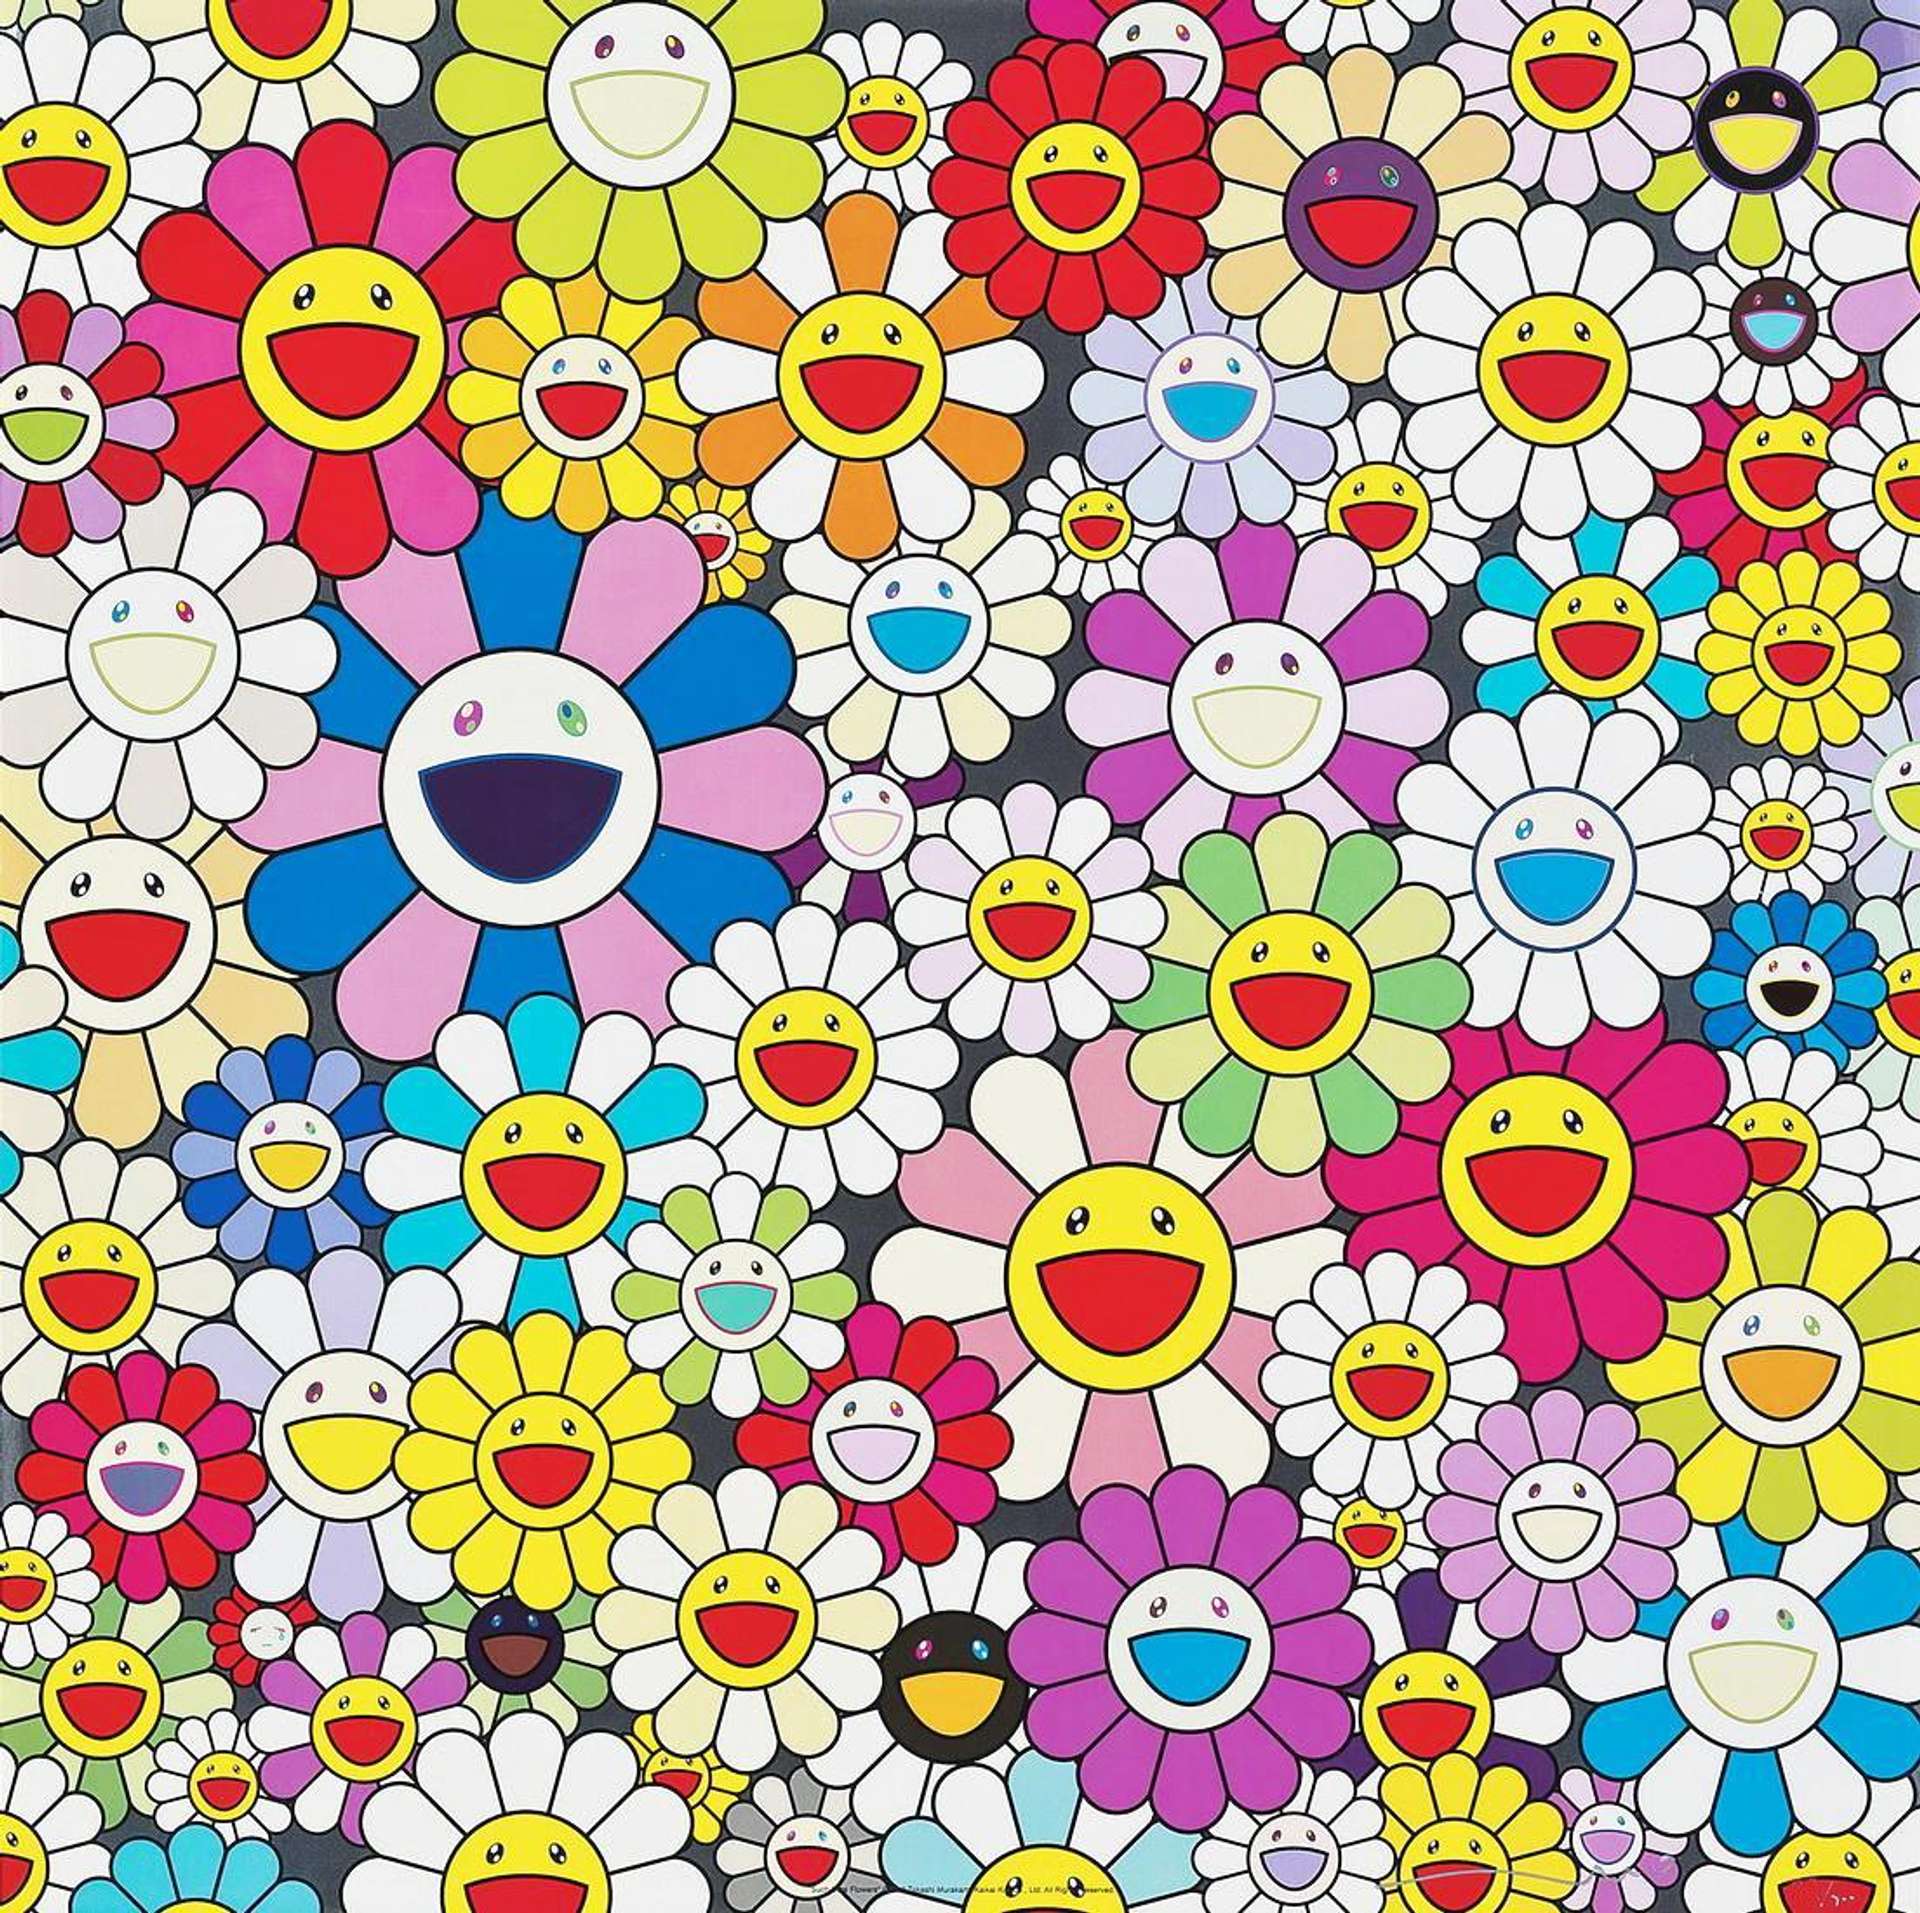 Takashi Murakami: Such Cute Flowers - Signed Print